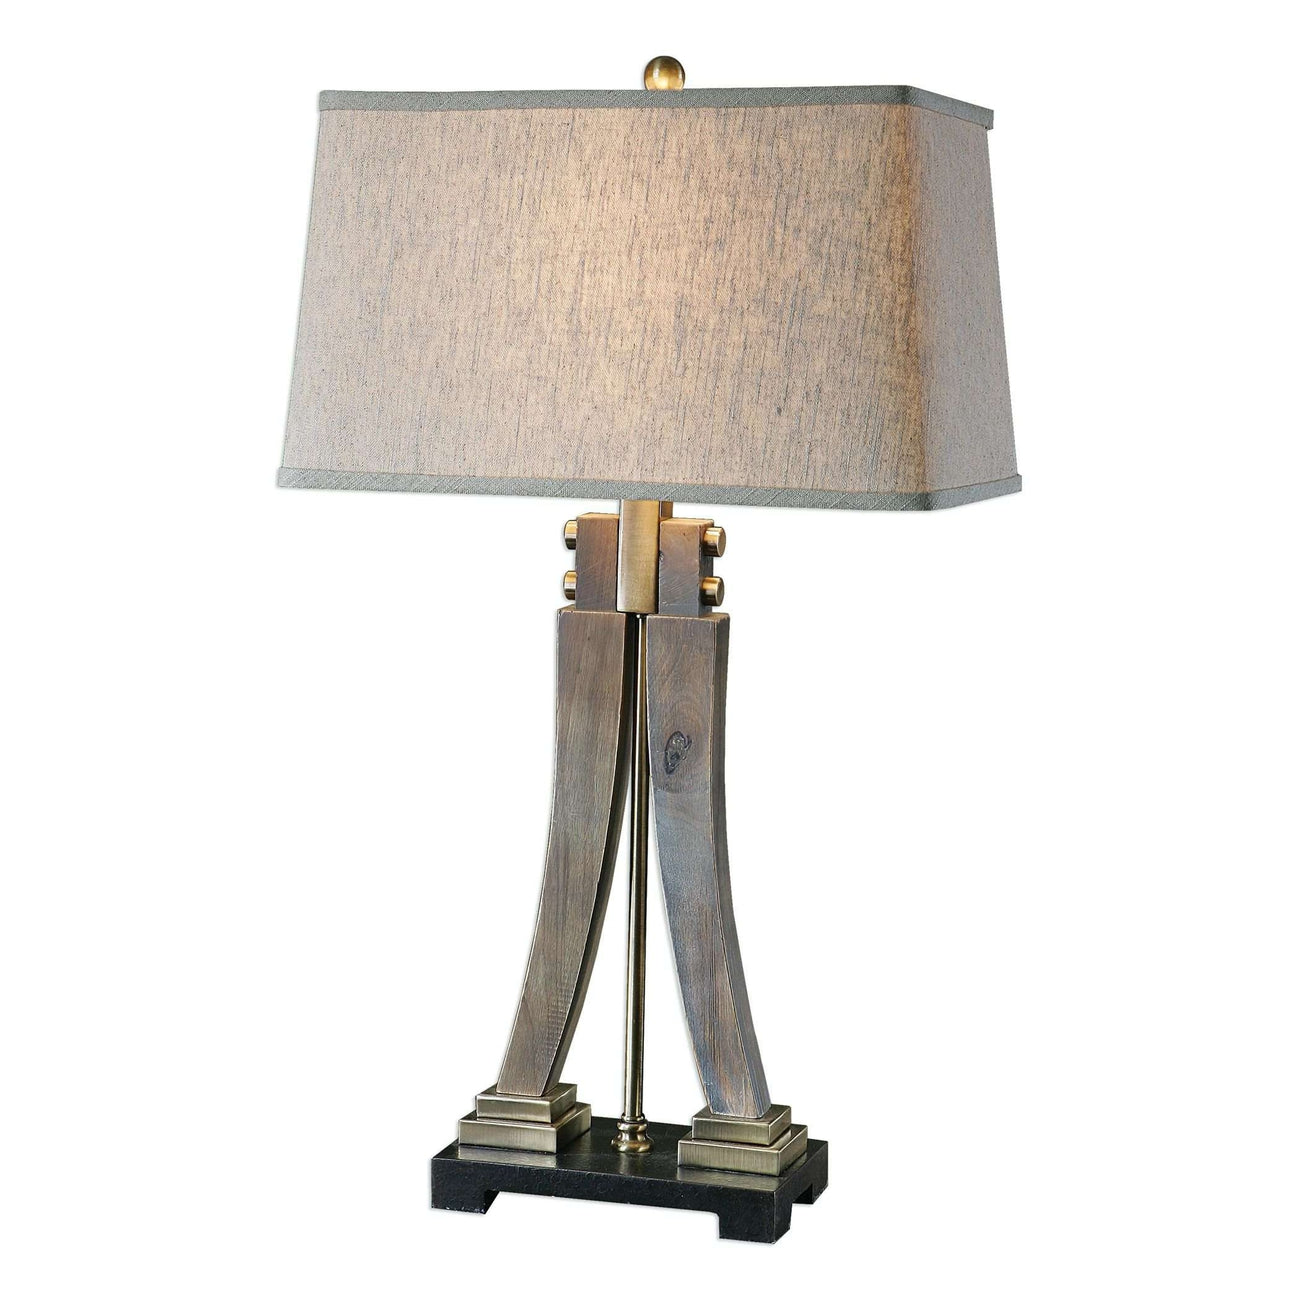 Yerevan Wood Leg Lamp-Uttermost-UTTM-27220-Table Lamps-1-France and Son